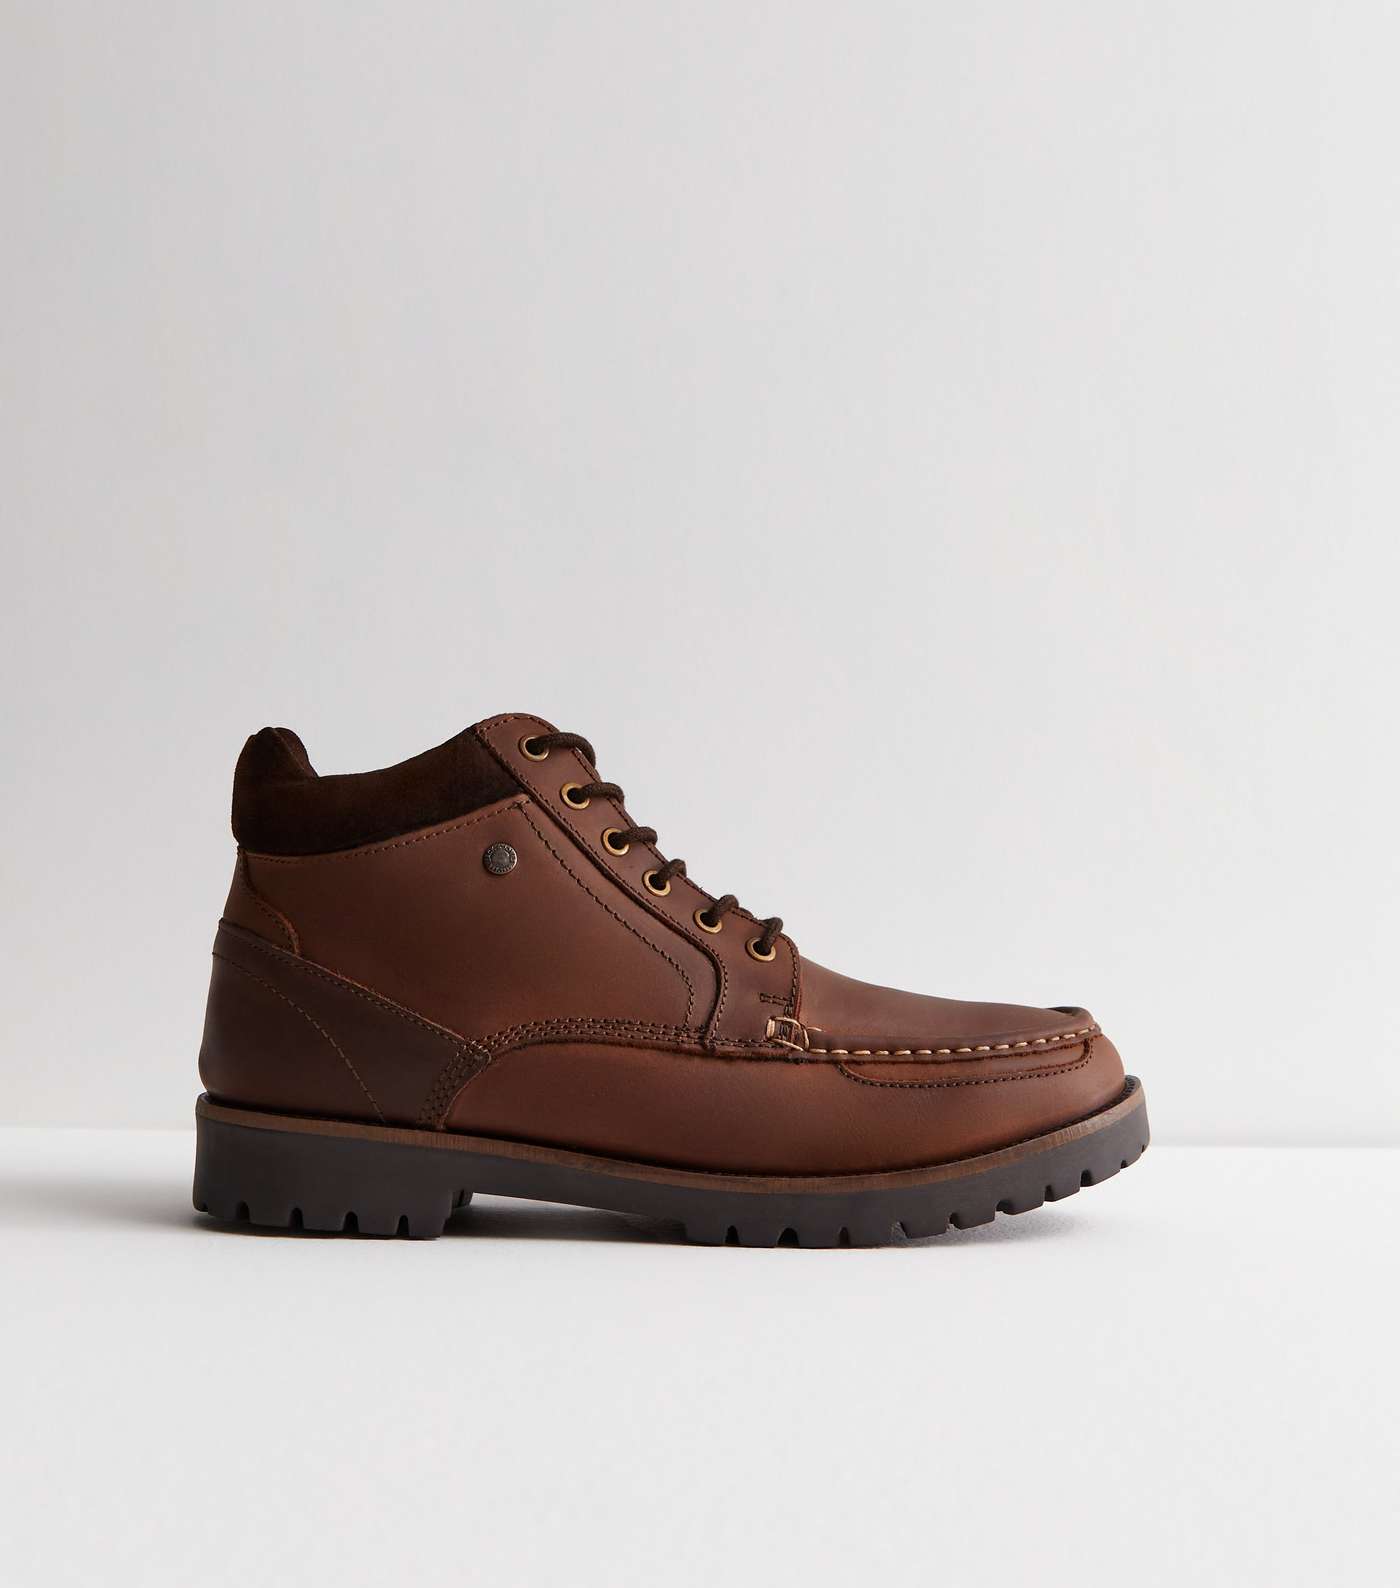 Jack & Jones Dark Brown Leather-Look Boots Image 3